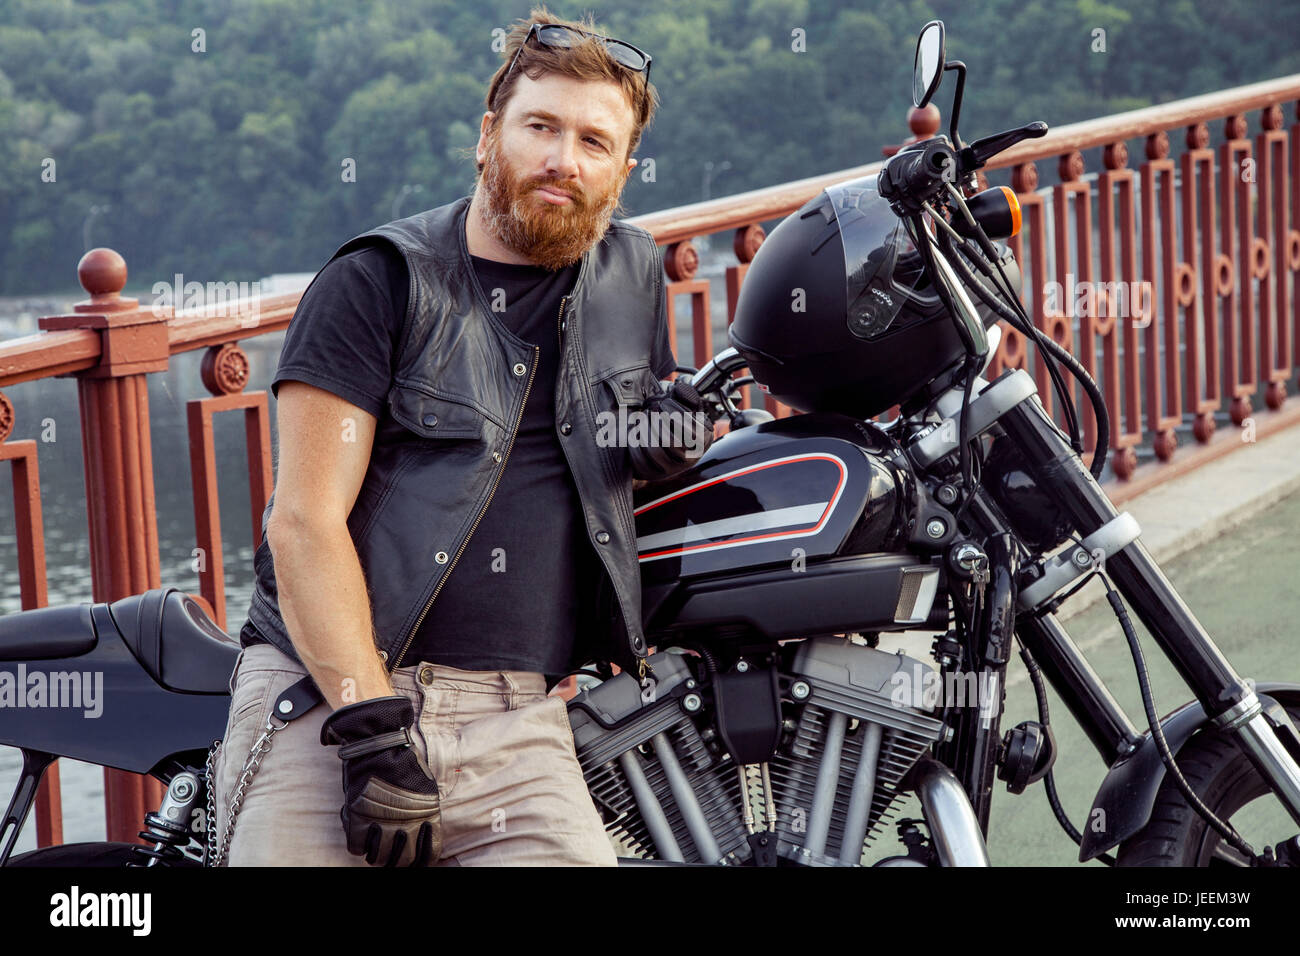 Bearded redhead biker with beard in leather jacket near bike. Stock Photo